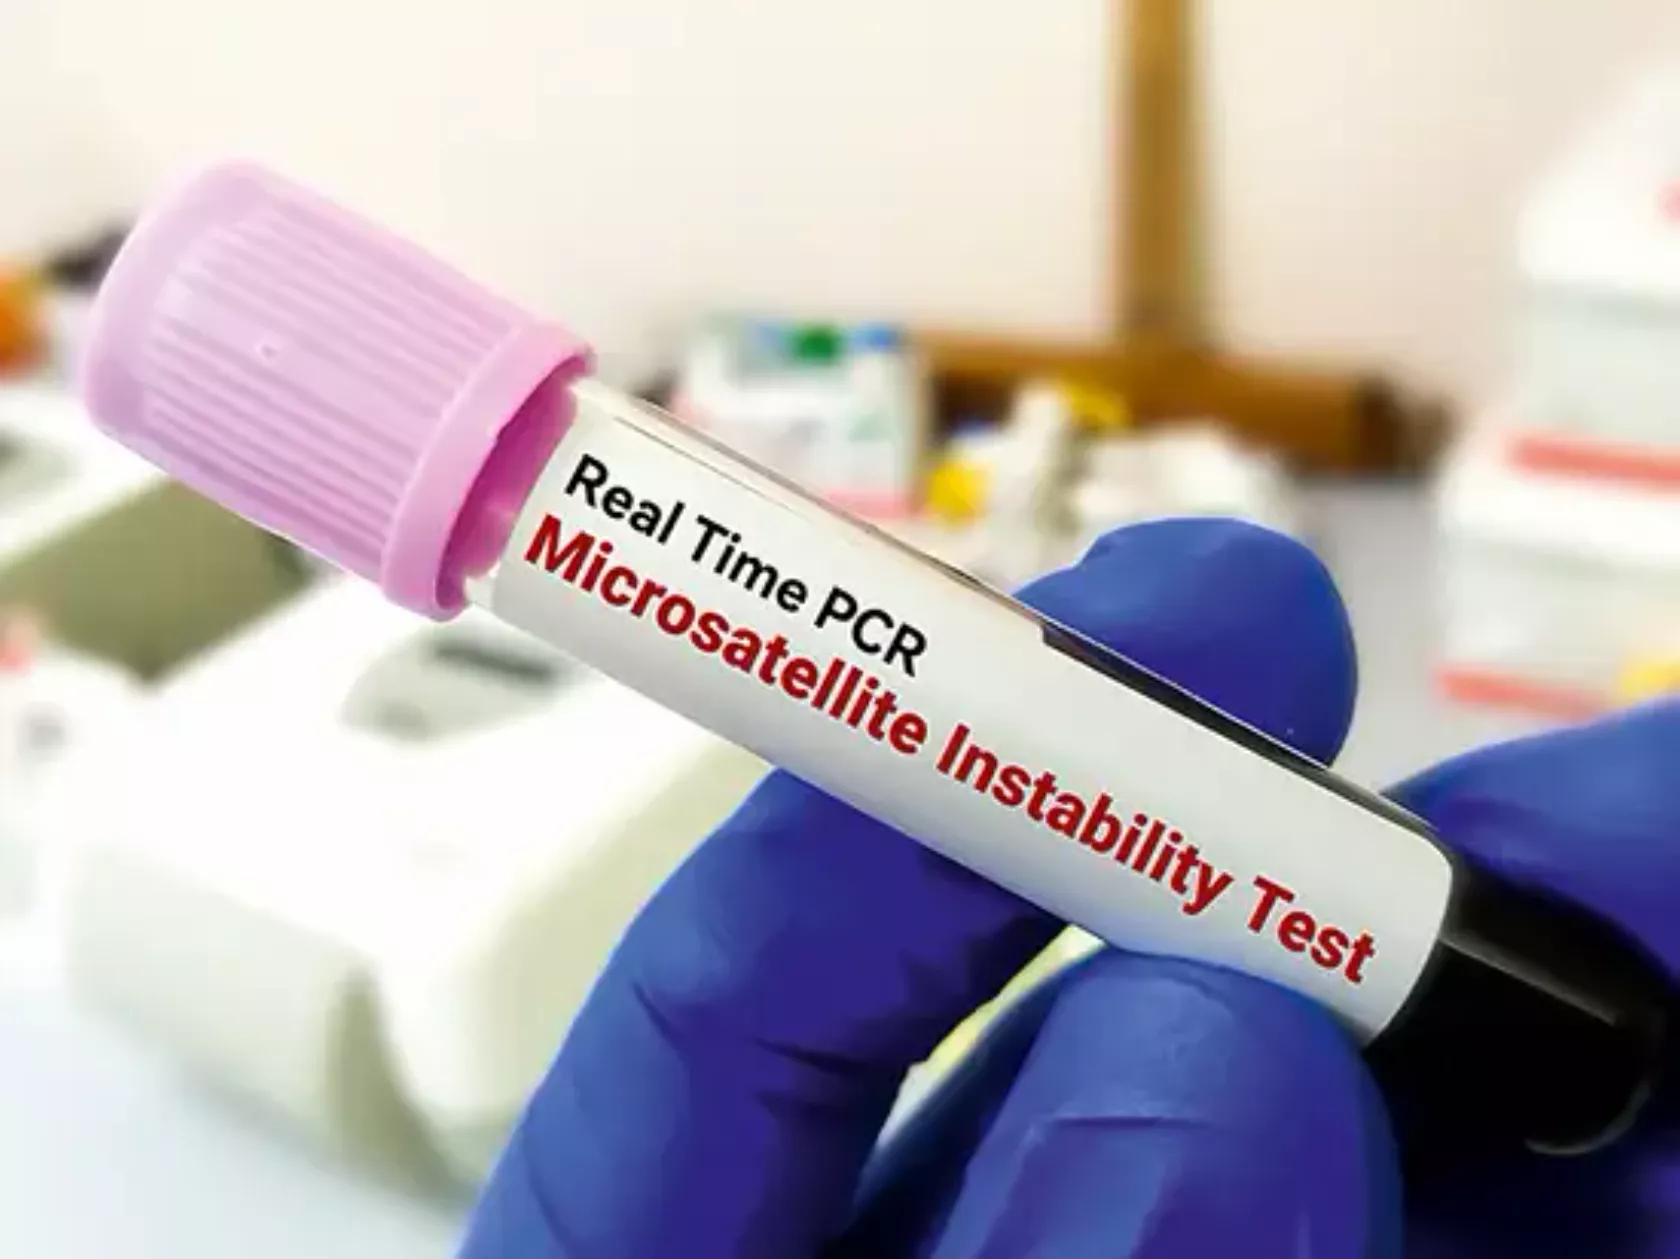 Blutproben-Röhrchen für PCR-Test